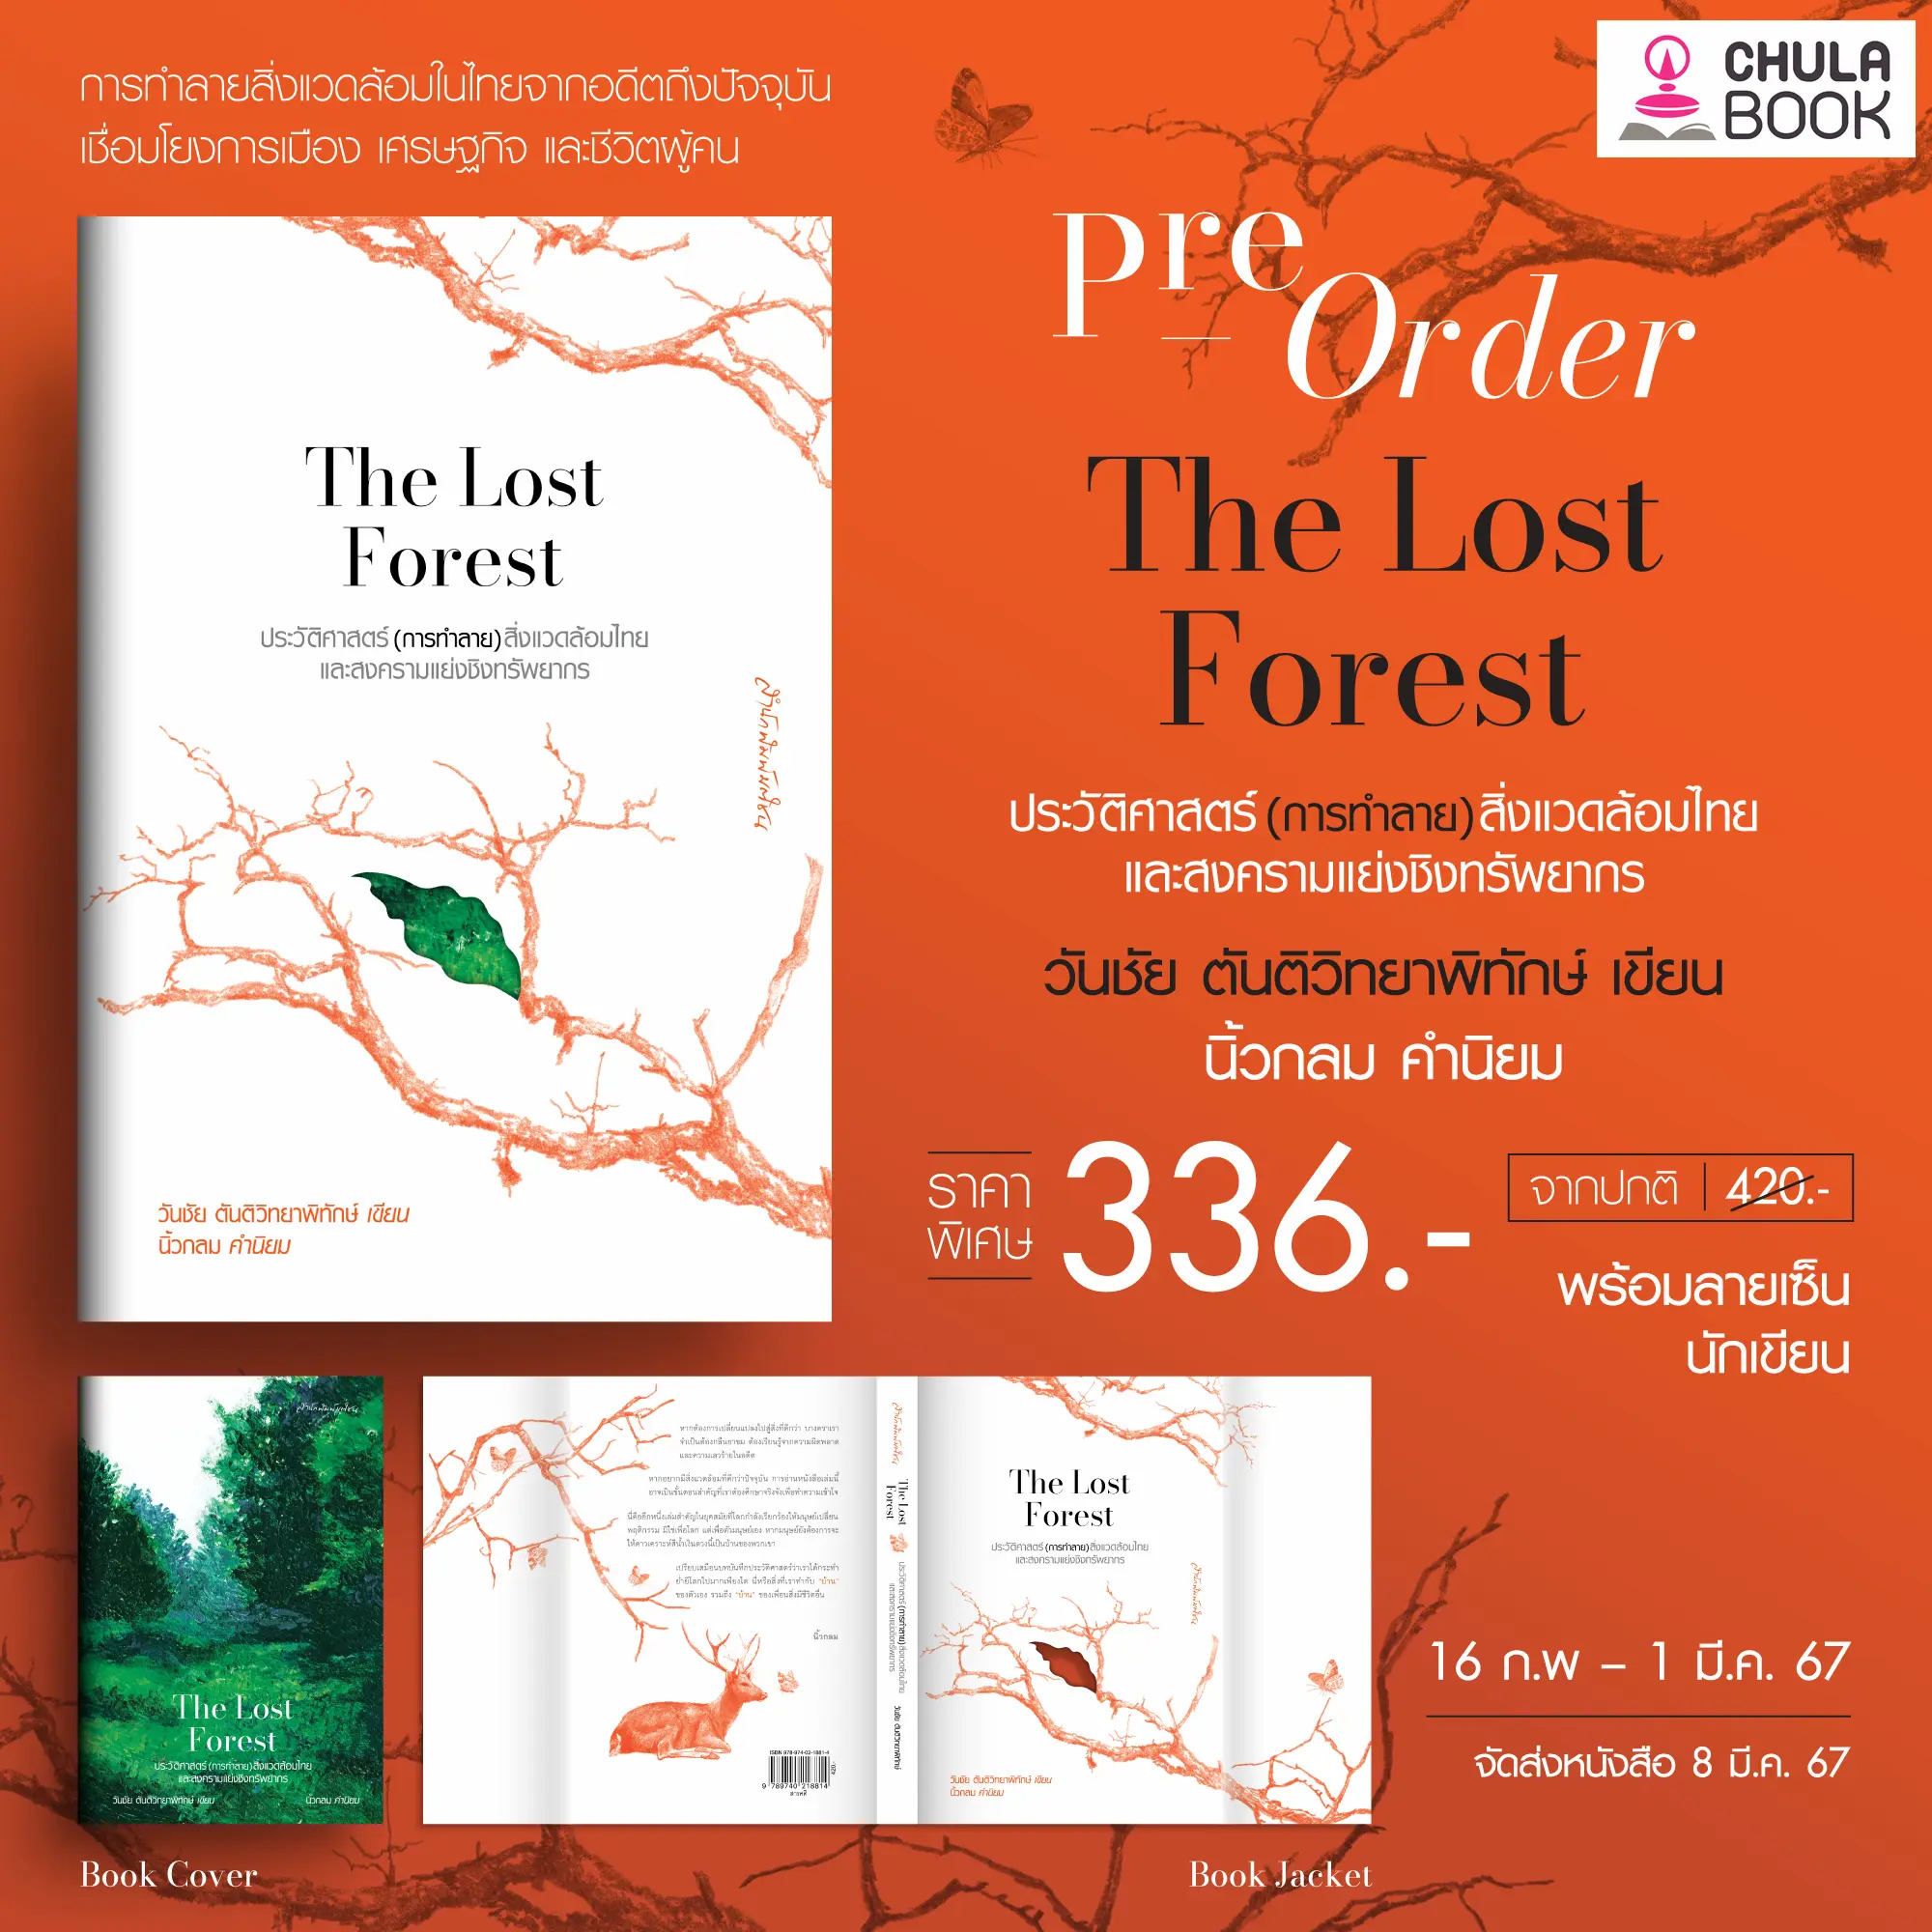 THE LOST FOREST ประวัติศาสตร์(การทำลาย)สิ่งแวดล้อมไทยและสงครามแย่งชิงทรัพยากร(ราคาปก 420.-)(เฉพาะจอง